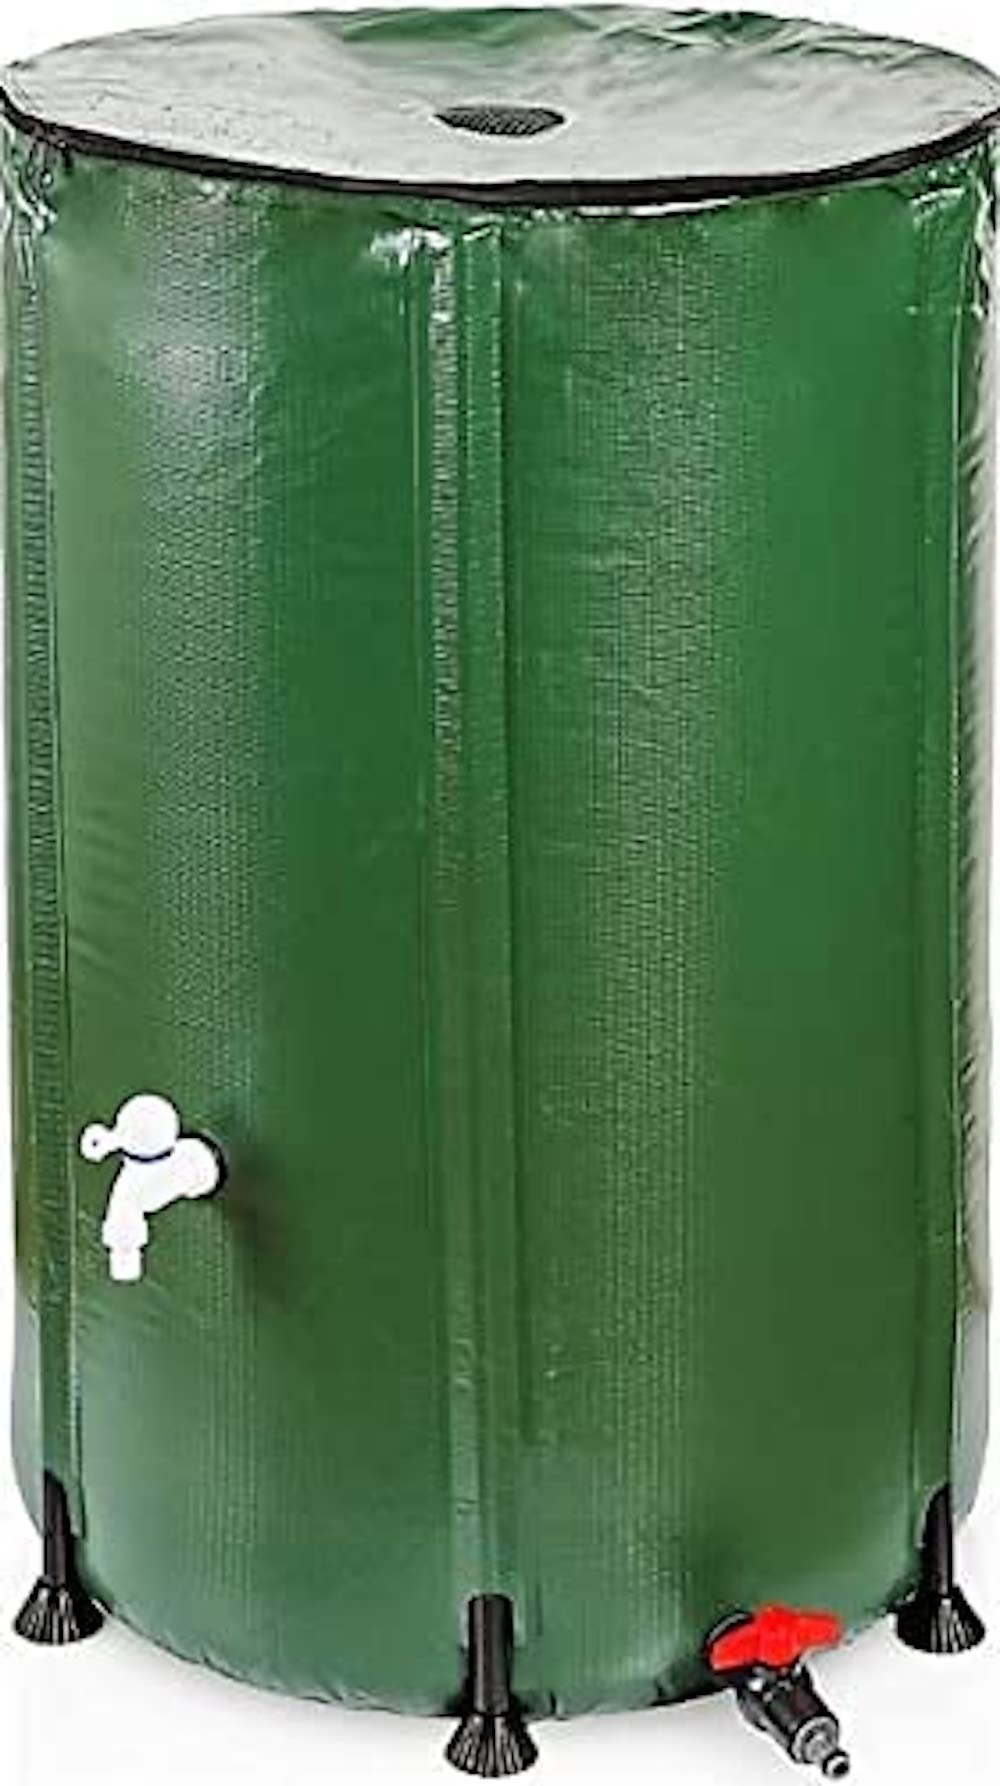 RENATA Faltbare grüne Regentonne aus UV-stabilem PVC, 250 Liter Volumen, inkl. Filter & Schlauchschnelladapter, Tonne, Regentonne, Mehrzweckfass, Kunststoffbehälter, Wassertank